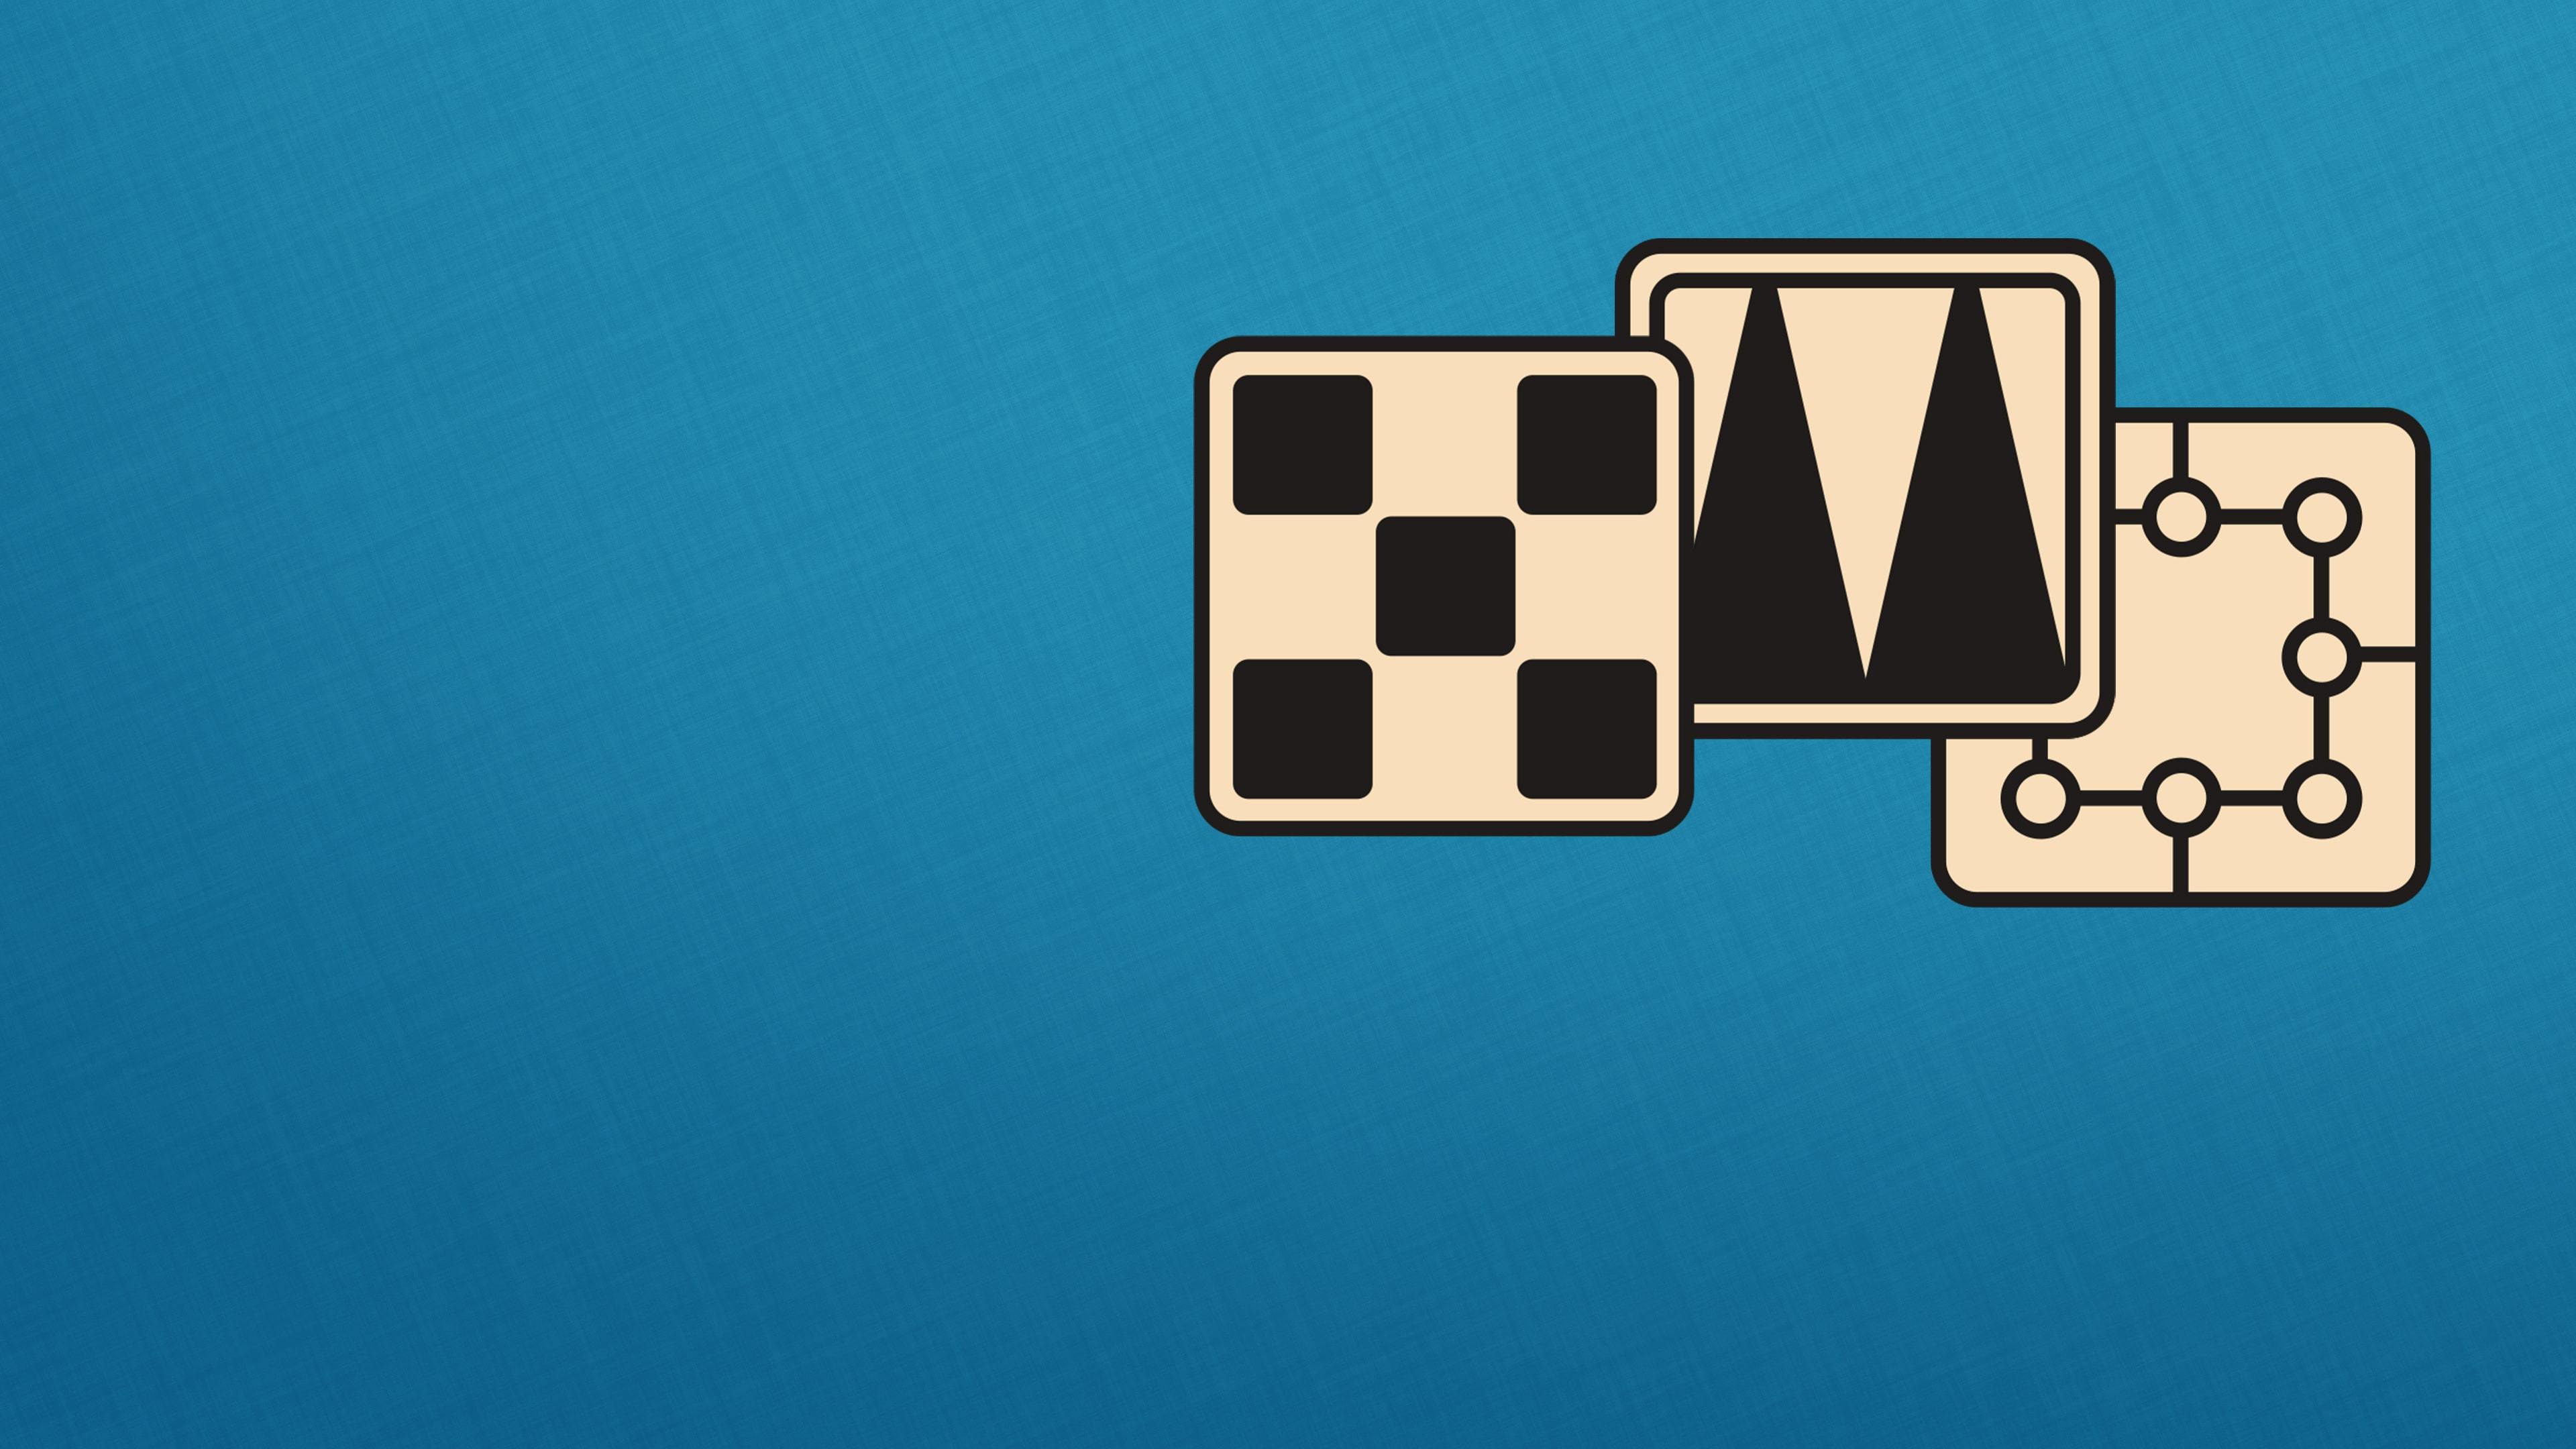 Banner of Colección de juegos 3en1: Backgammon + Damas + Molino 